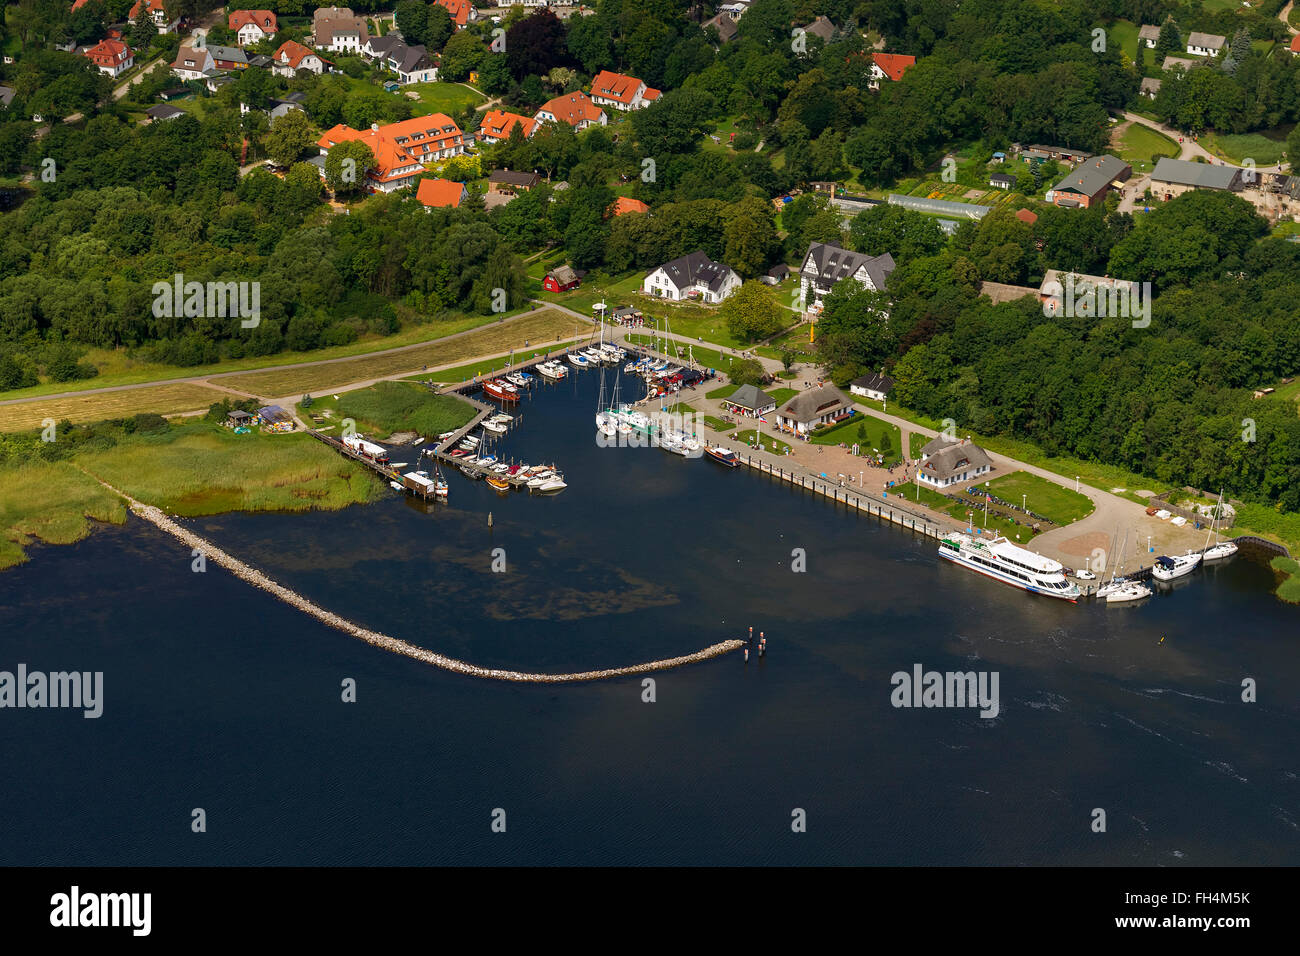 Vue aérienne du port de la Baltique, Kloster Hiddensee Hiddensee, sur la mer Baltique, l'île, Mecklenburg-Vorpommern, Allemagne, Europe, antenne Banque D'Images